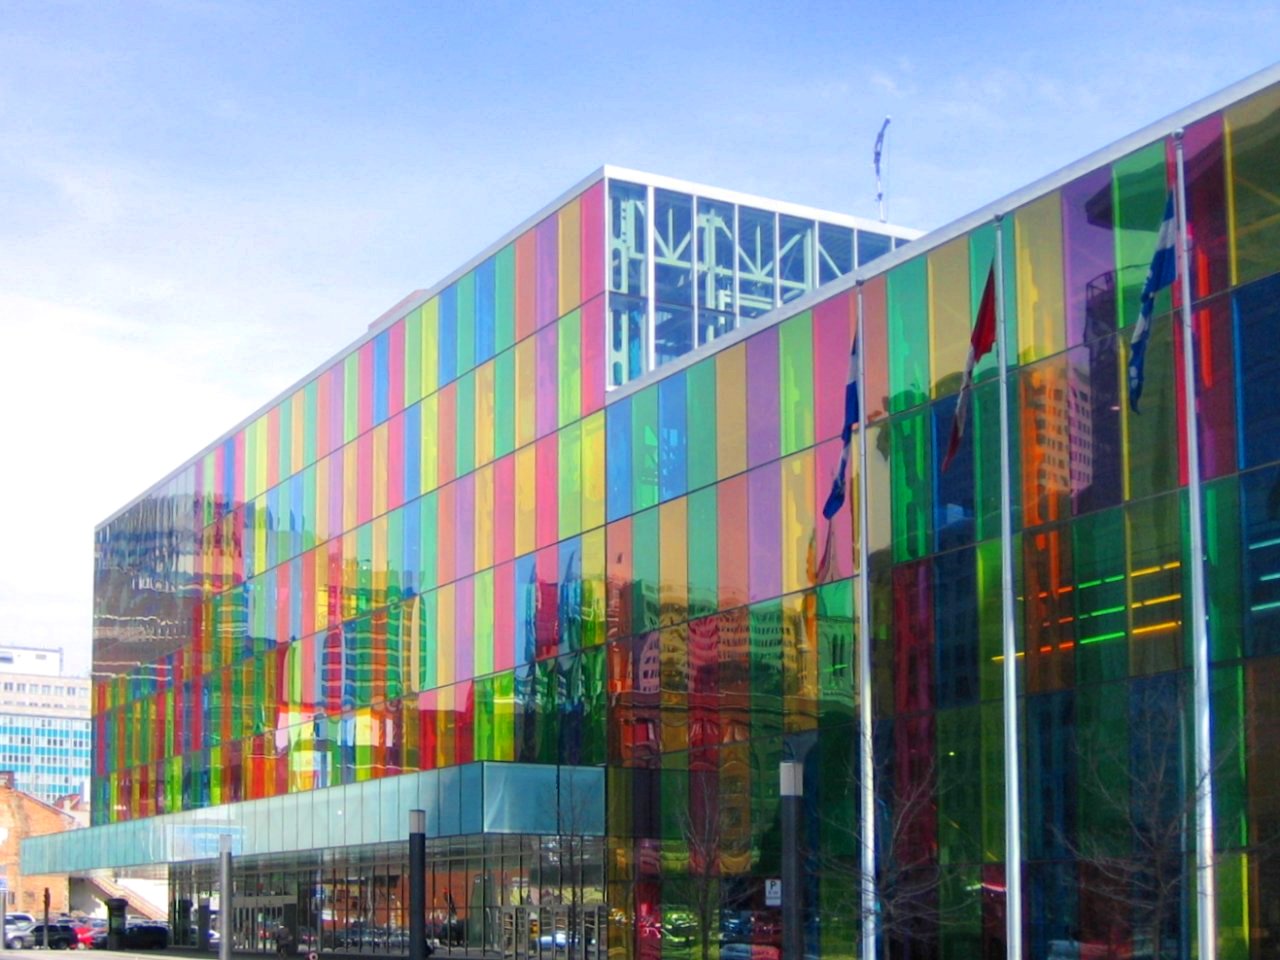 Palais des Congres, Montreal